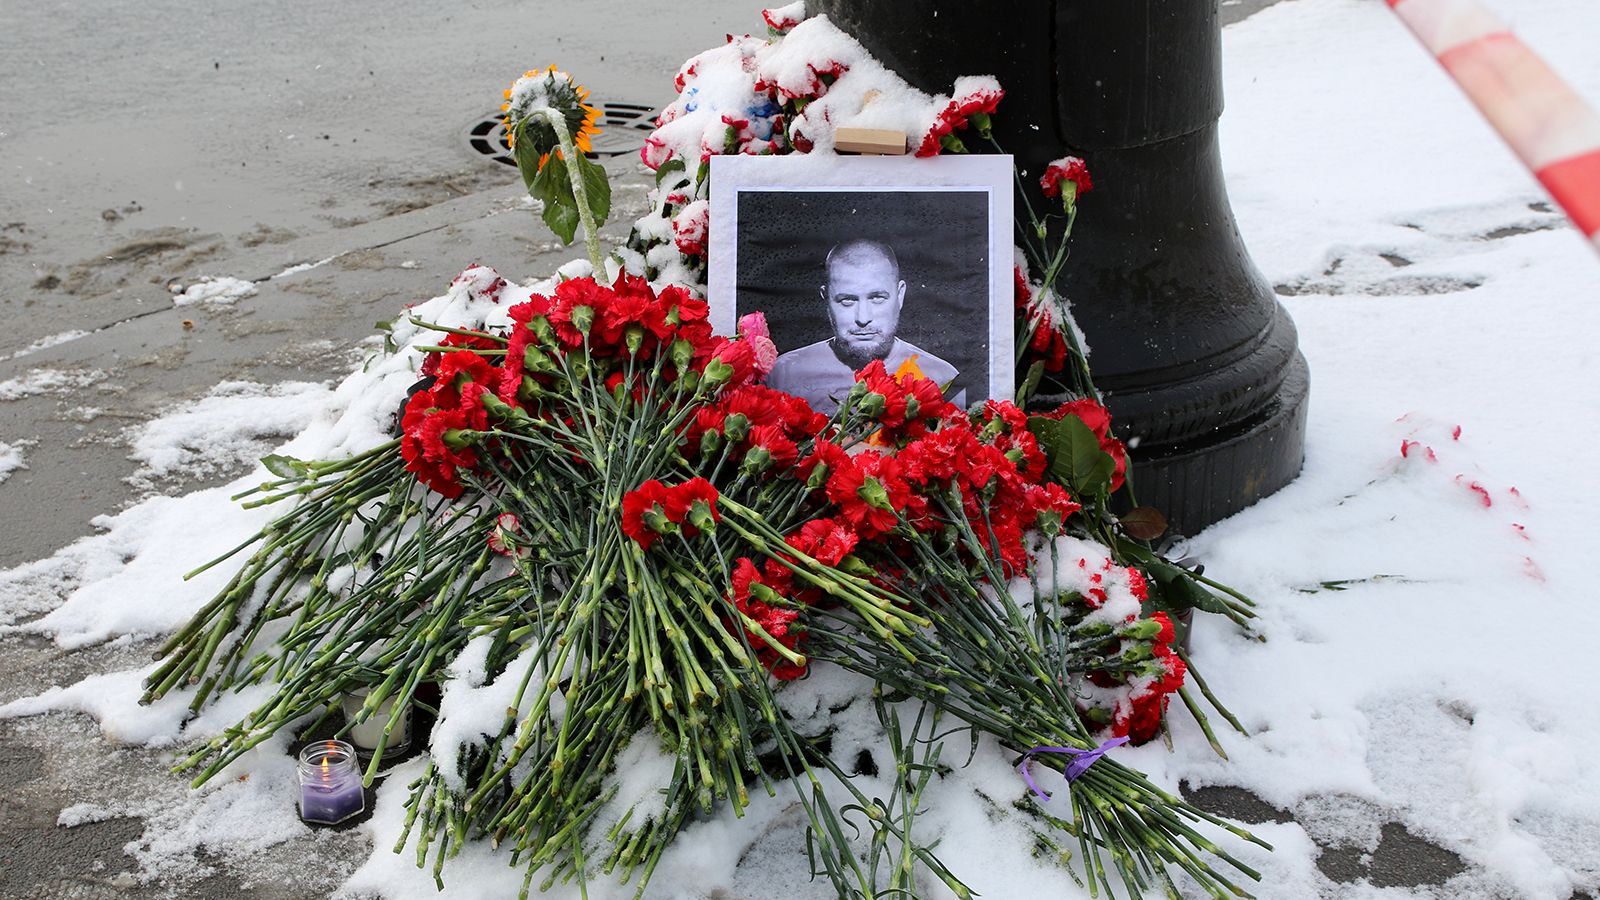 Похороны жертв теракта в москве